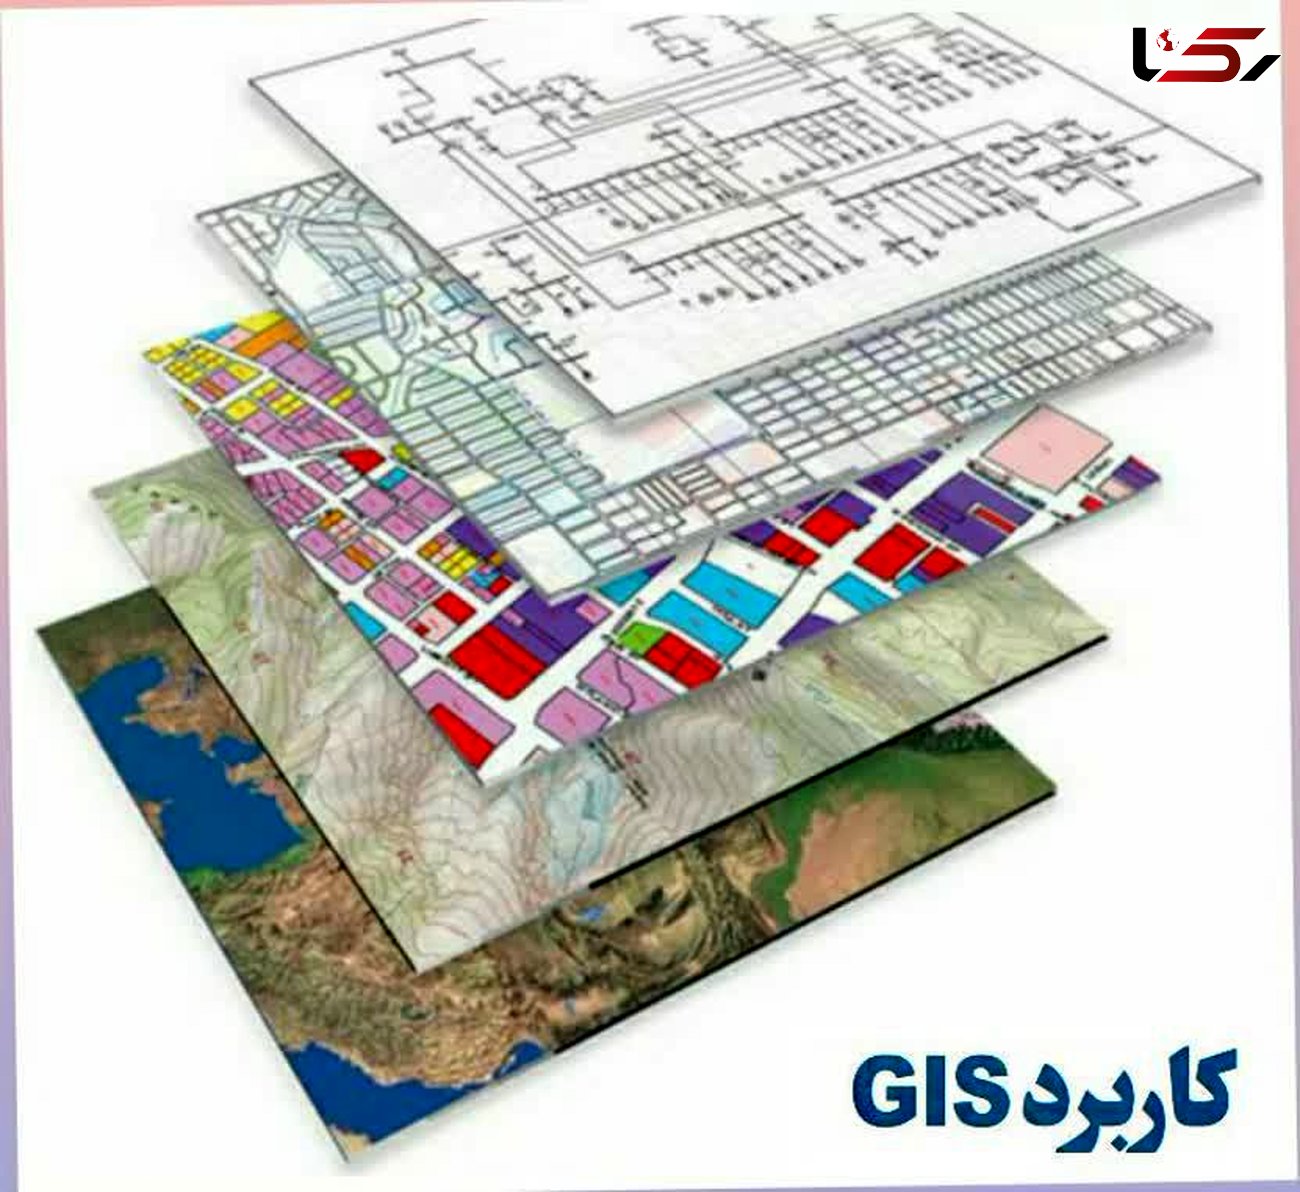 نقش موثر GIS در توسعه شبکه های برق رسانی / سیستم اطلاعات مکانی فراتر از یک نرم افزار است